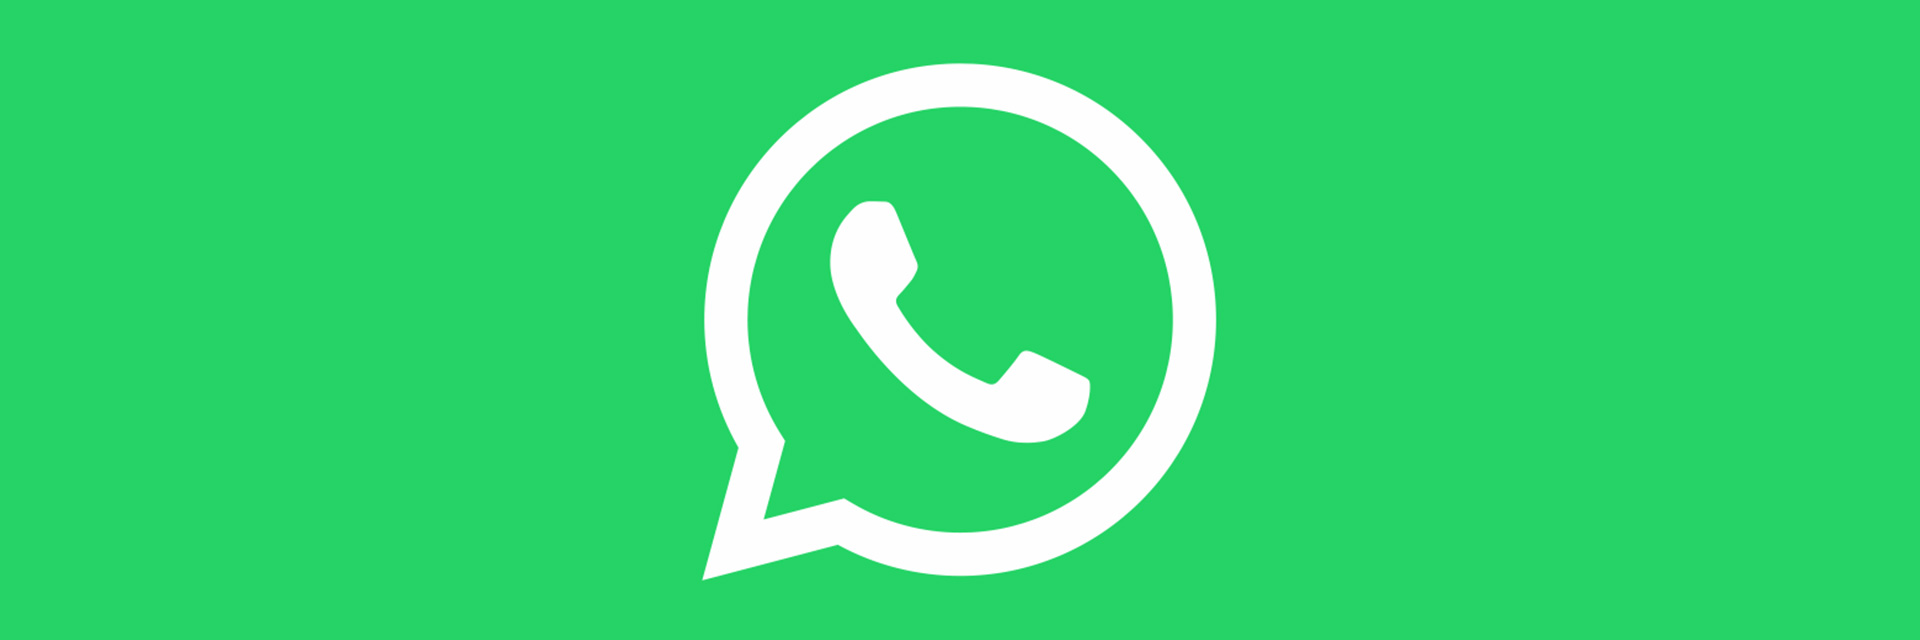 Whatsapp все же ограничит возможность переписки для всех несогласных с новой политикой